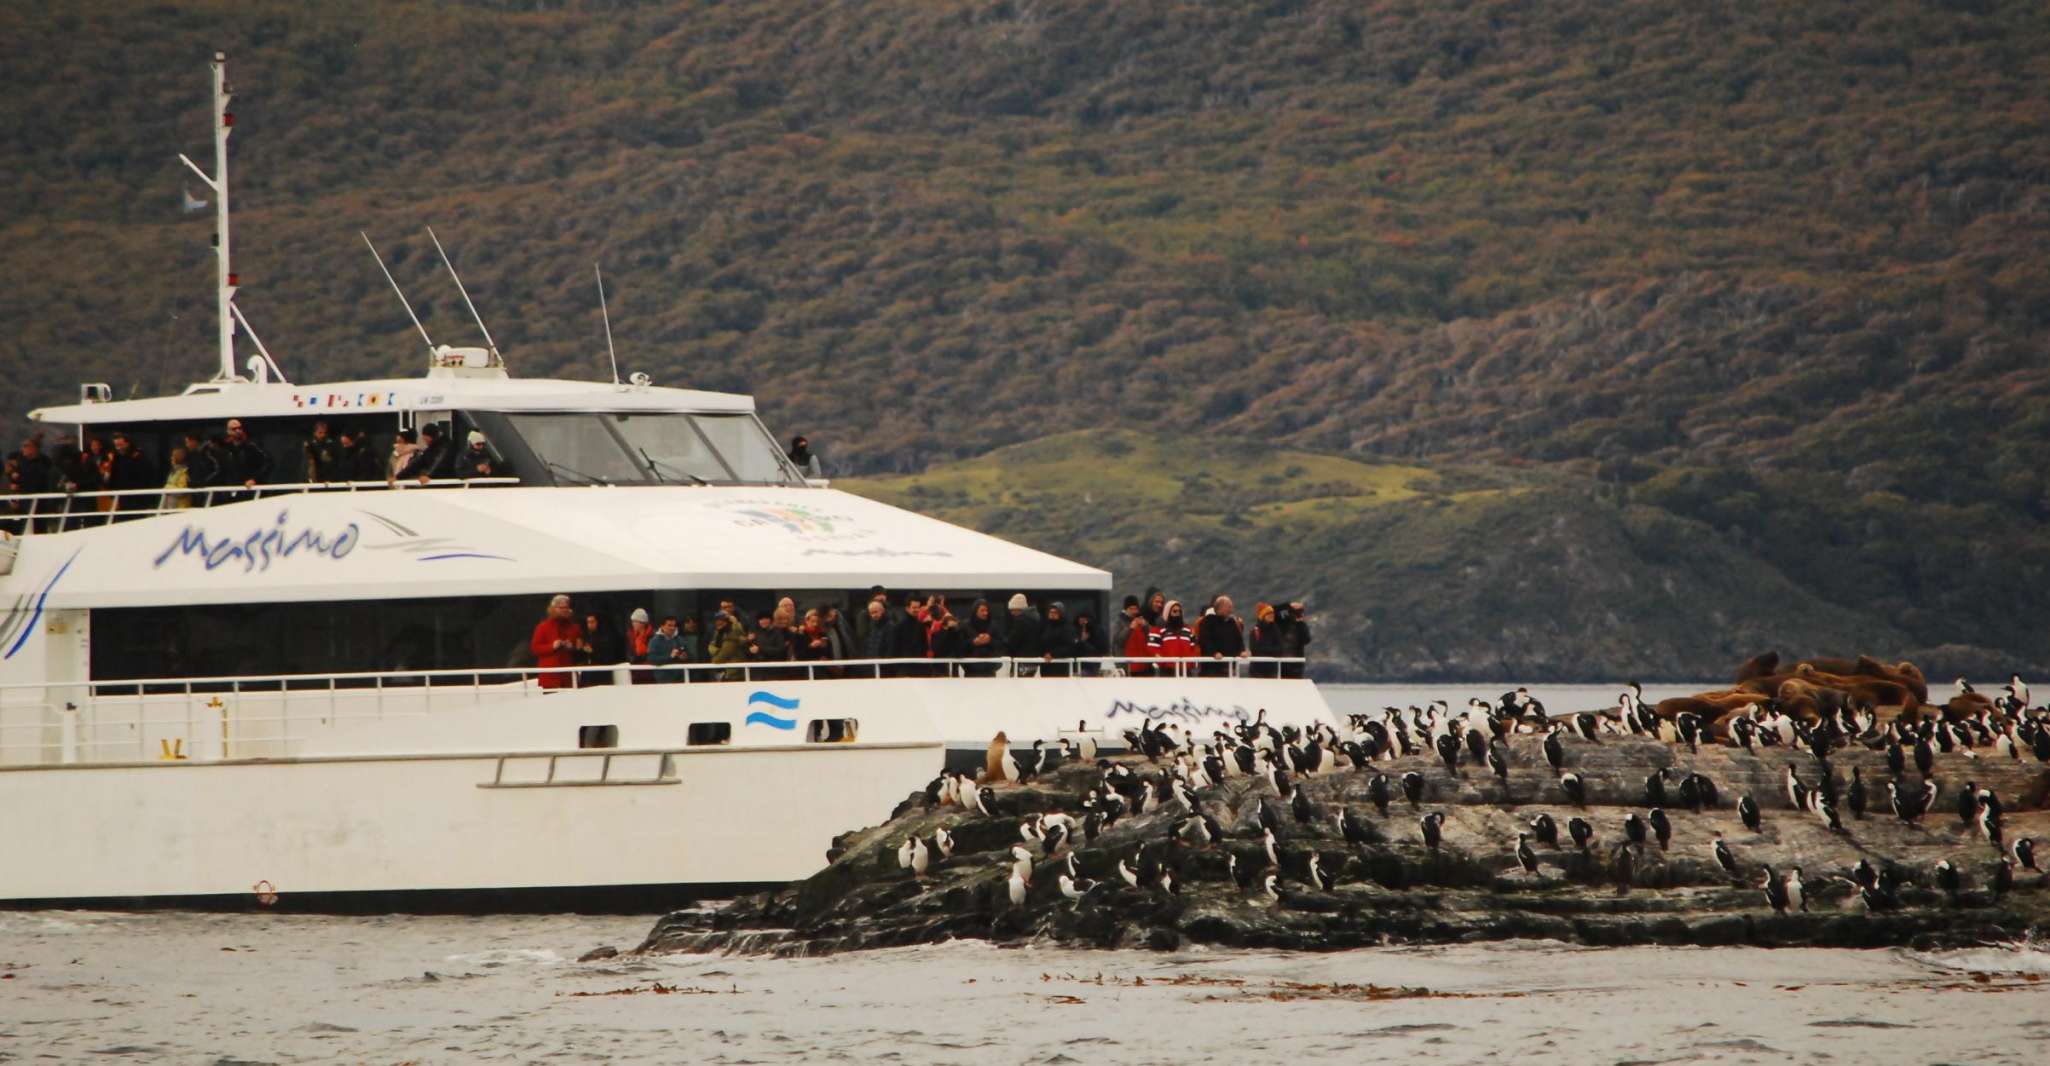 Ushuaia, Penguin Watching Tour by Catamaran - Housity